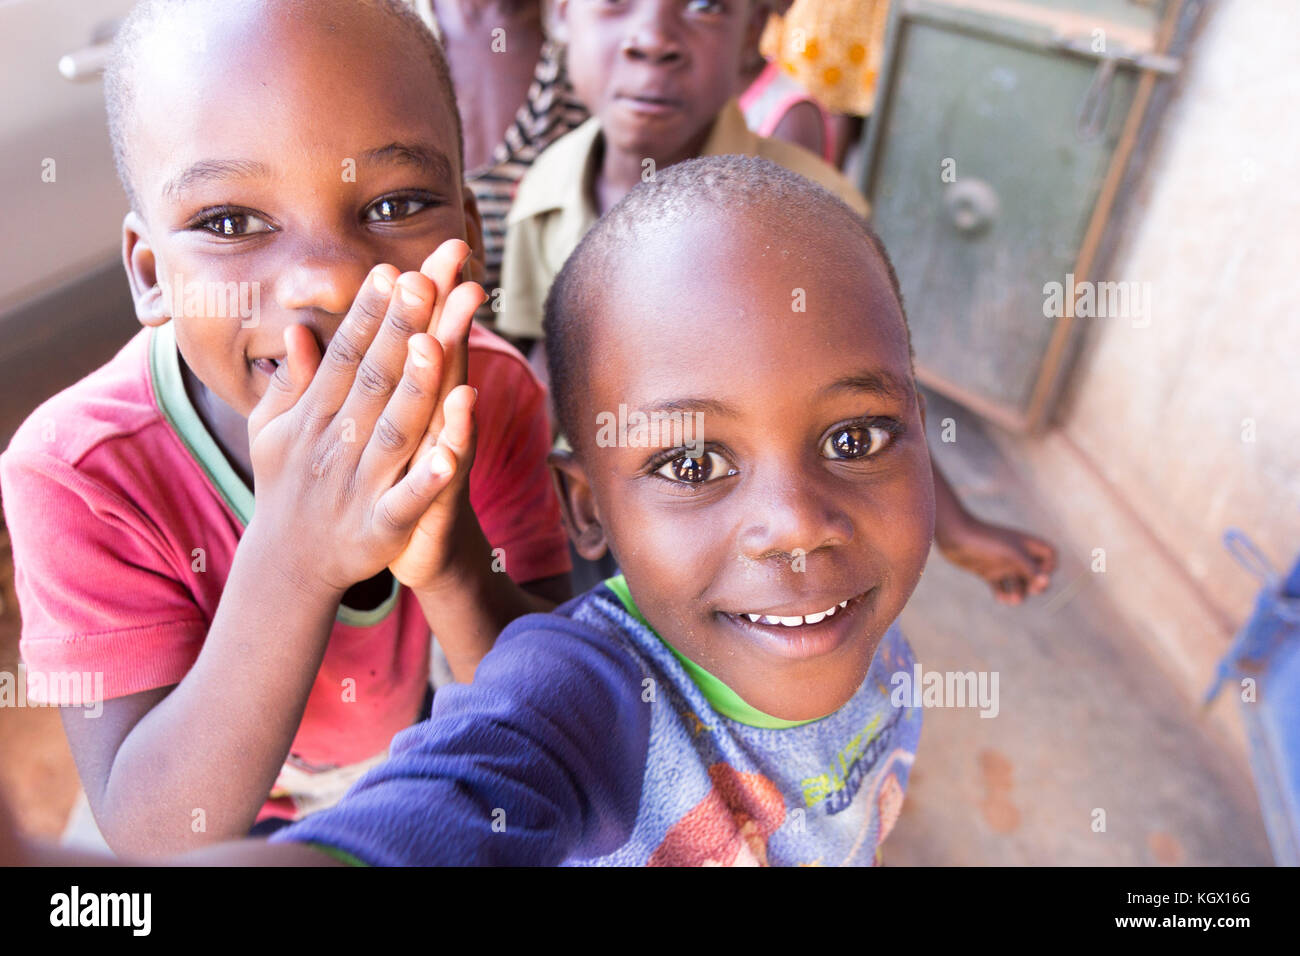 Un montón de niños ugandeses al azar en la calle riendo, sonriendo, saludando y divirtiéndose en el frontal de la cámara. Foto de stock